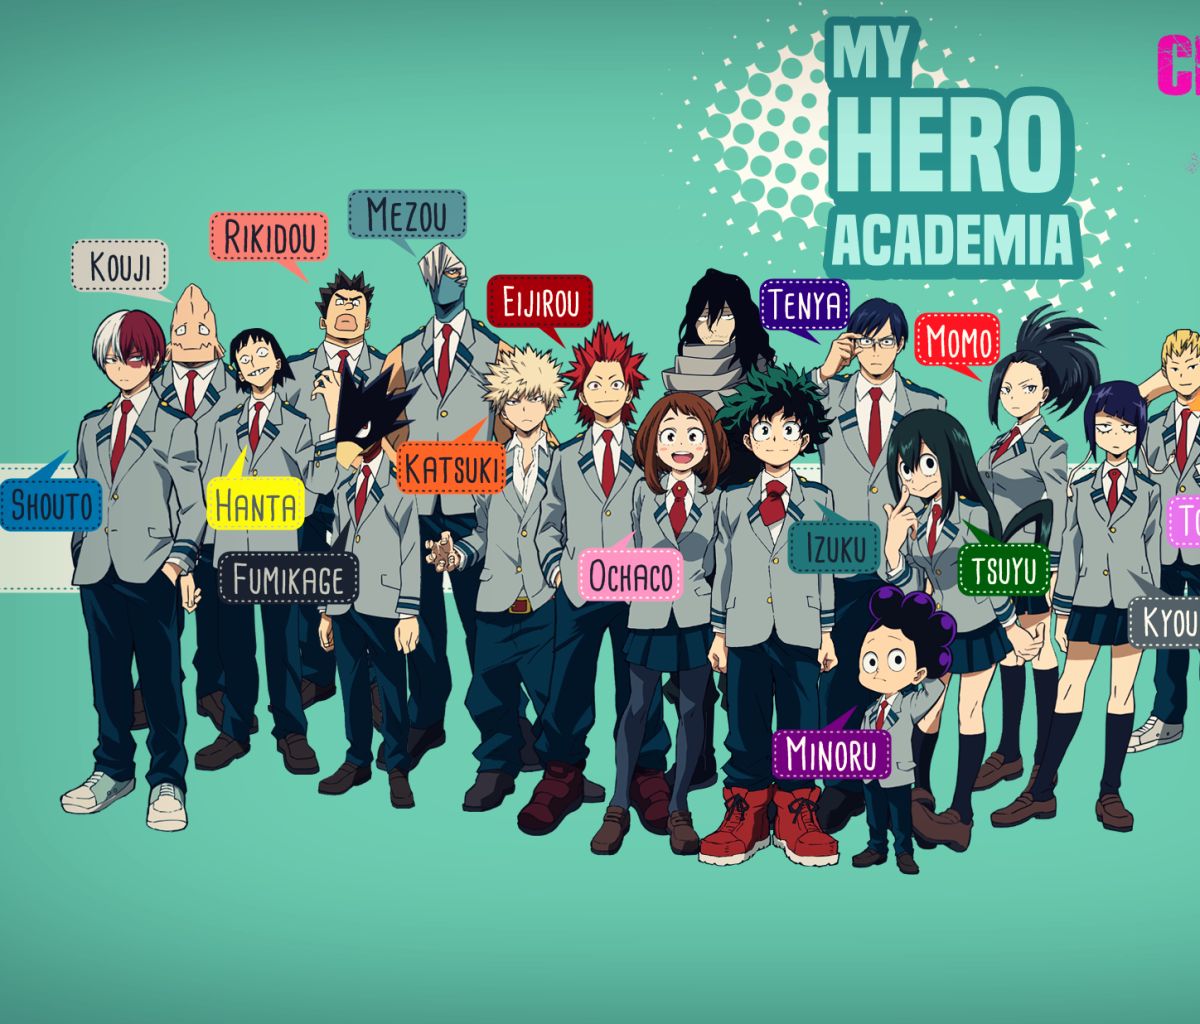 Download mobile wallpaper Anime, Izuku Midoriya, Shoto Todoroki, Katsuki Bakugou, My Hero Academia, Ochaco Uraraka, Minoru Mineta, Eijiro Kirishima, Momo Yaoyorozu, Shouta Aizawa, Tsuyu Asui, Fumikage Tokoyami, Denki Kaminari for free.